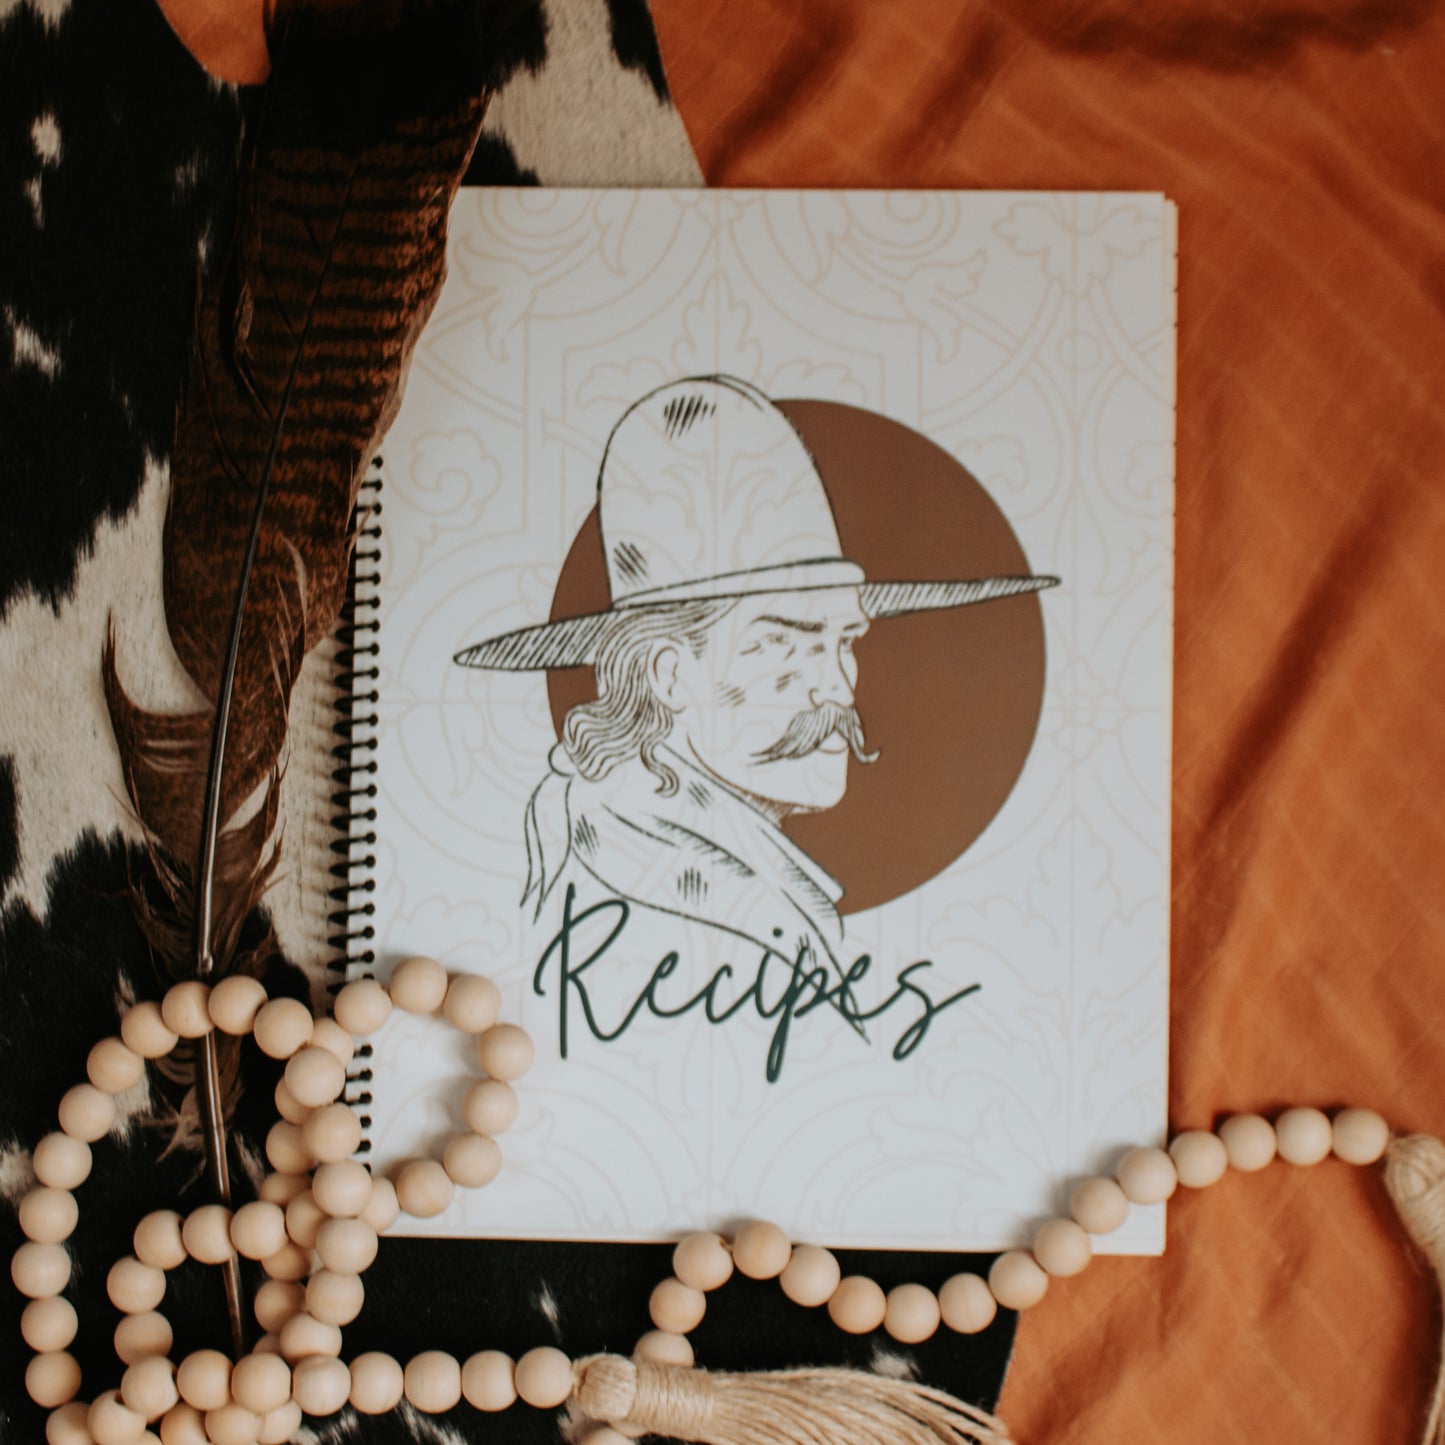 Recipe Book - Clyde The Cowboy